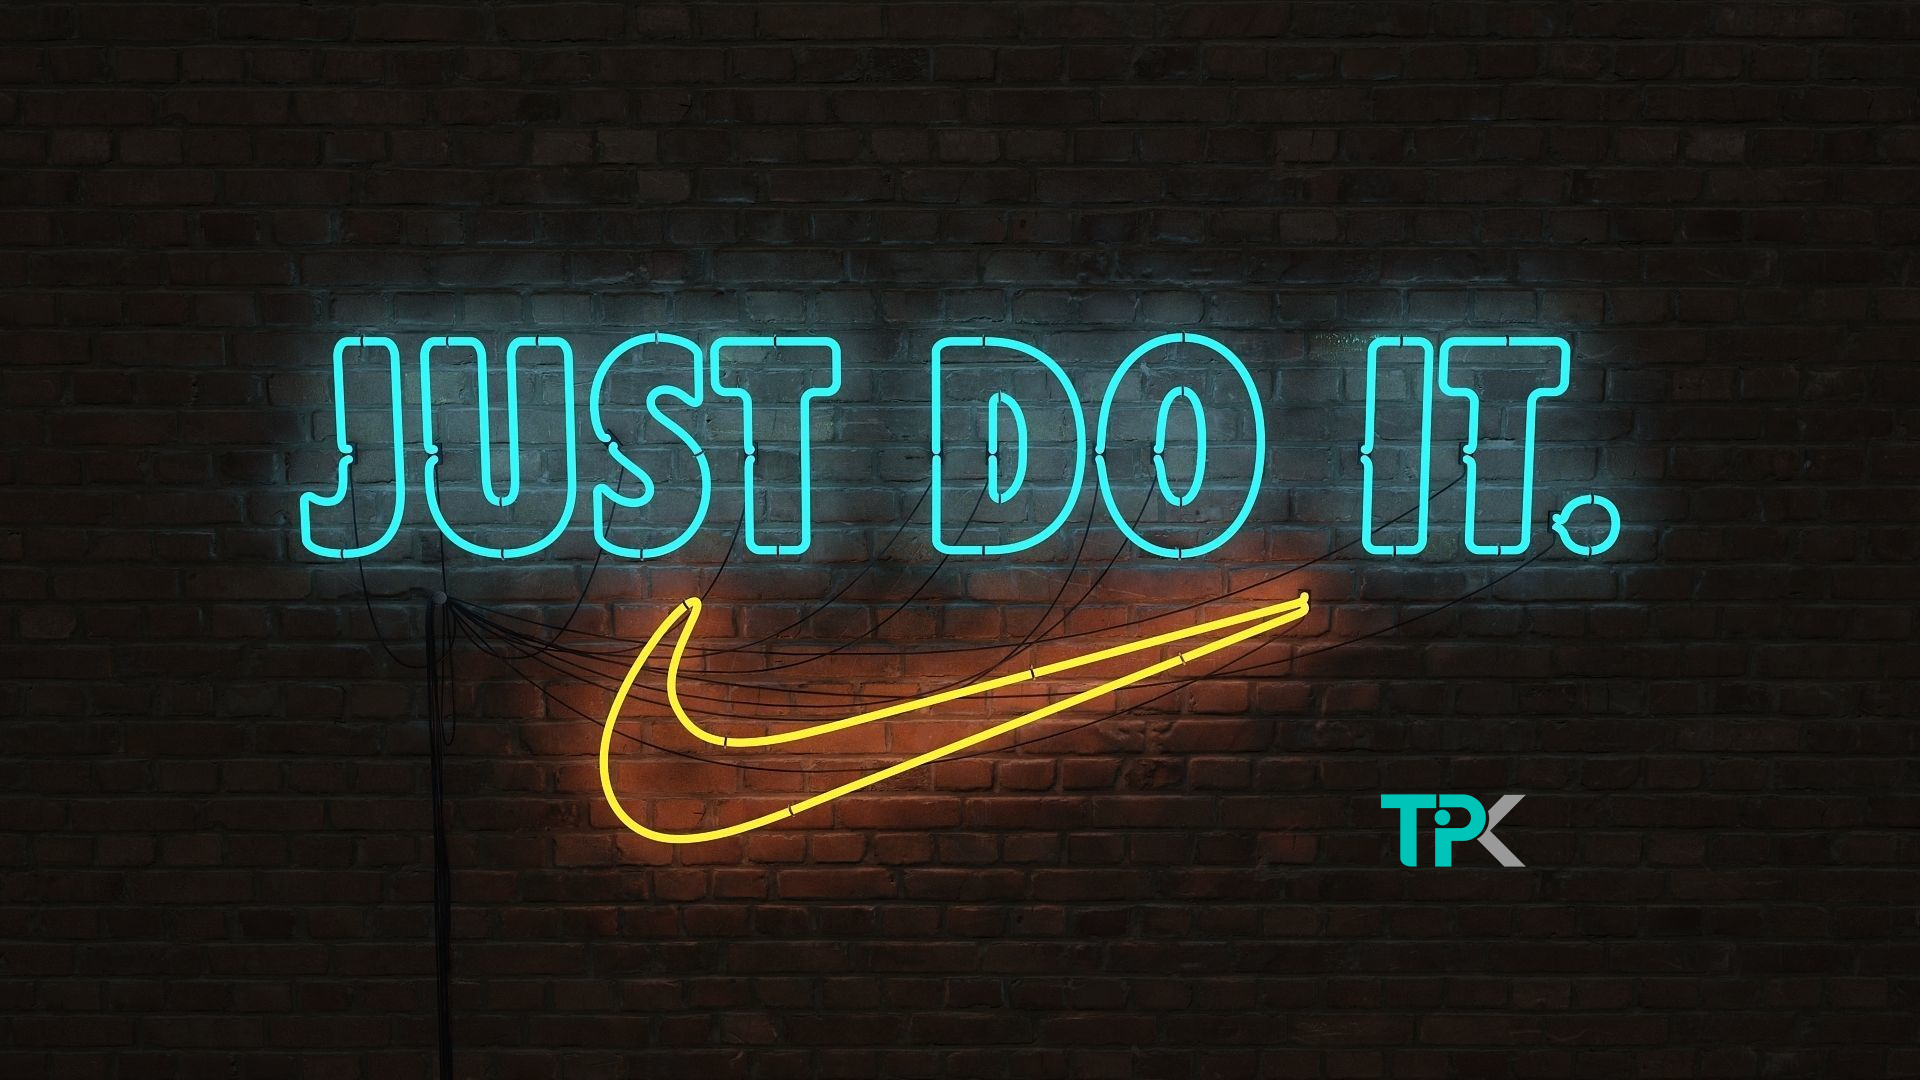 شعار برند نایکی - just do it - تیپ تیک مرجع تخصصی آگهی های صنعت مد و پوشاک